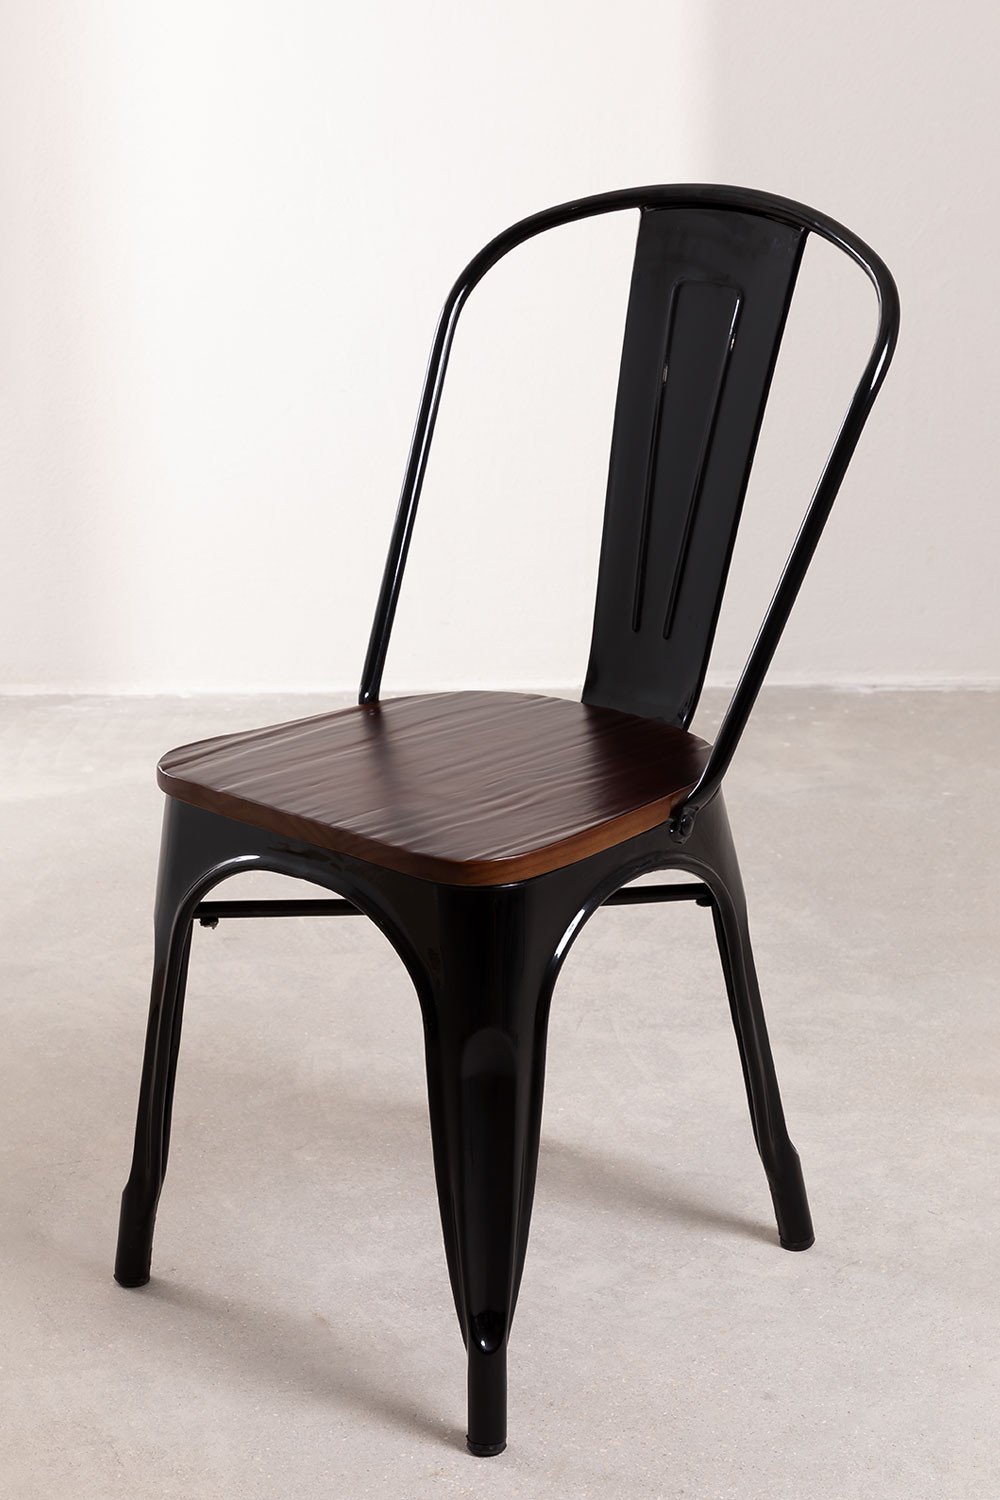 Stapelbare LIX stoel van hout, galerij beeld 1